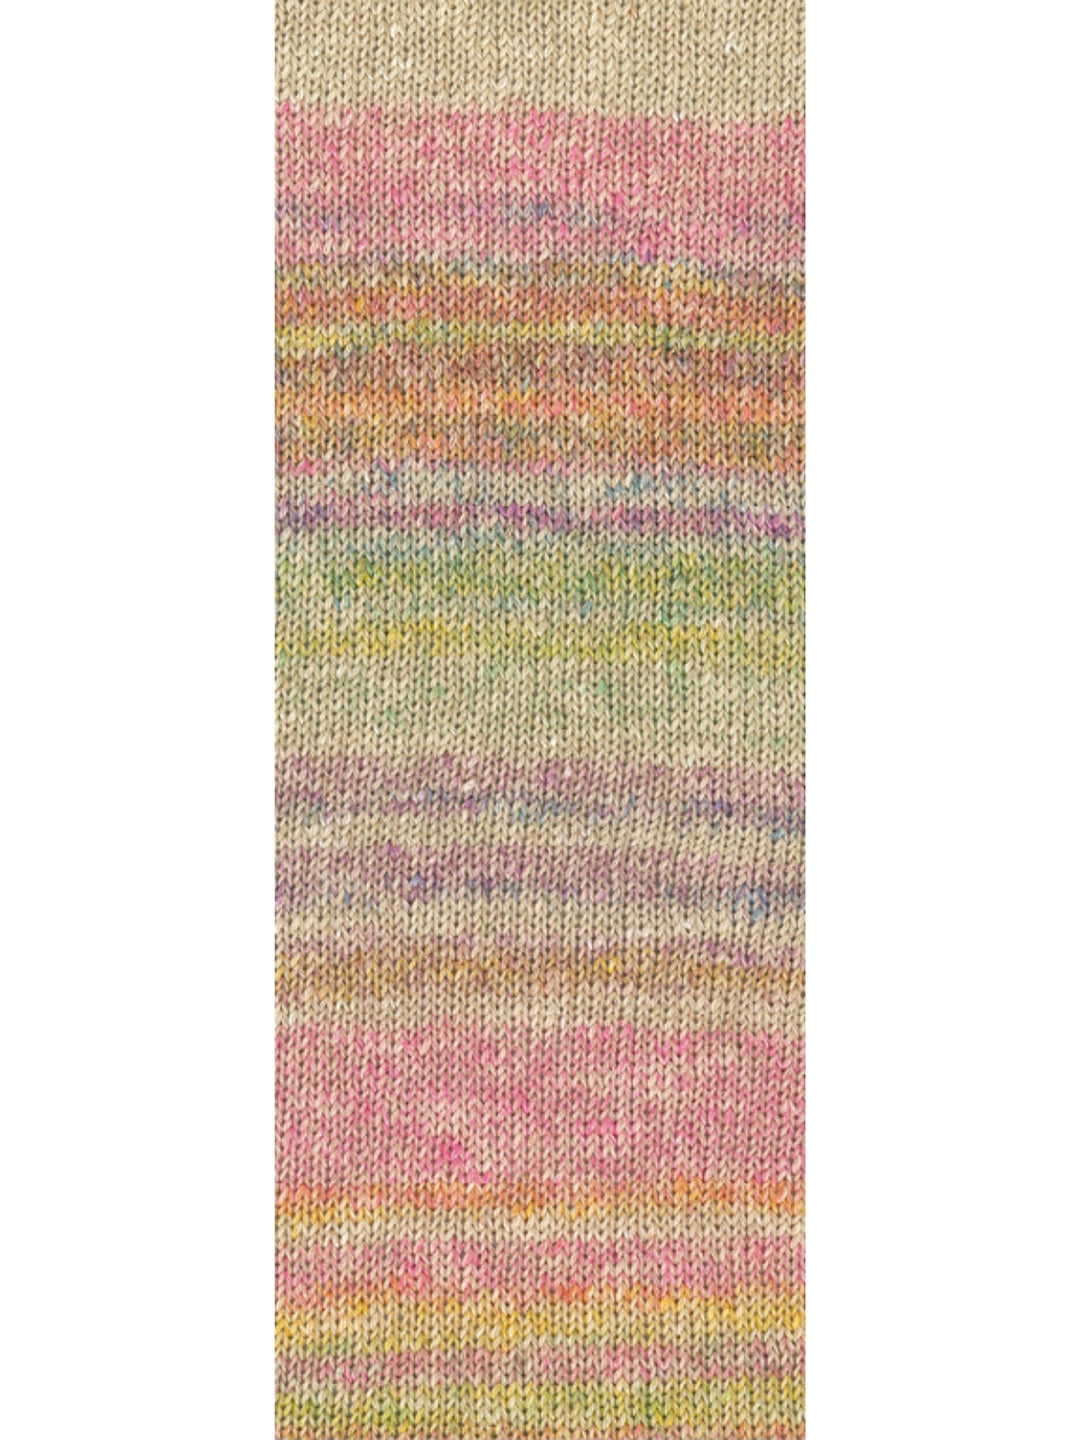 Mosaico 003 Mosterd / Pink / Oranje / Grijsbeige